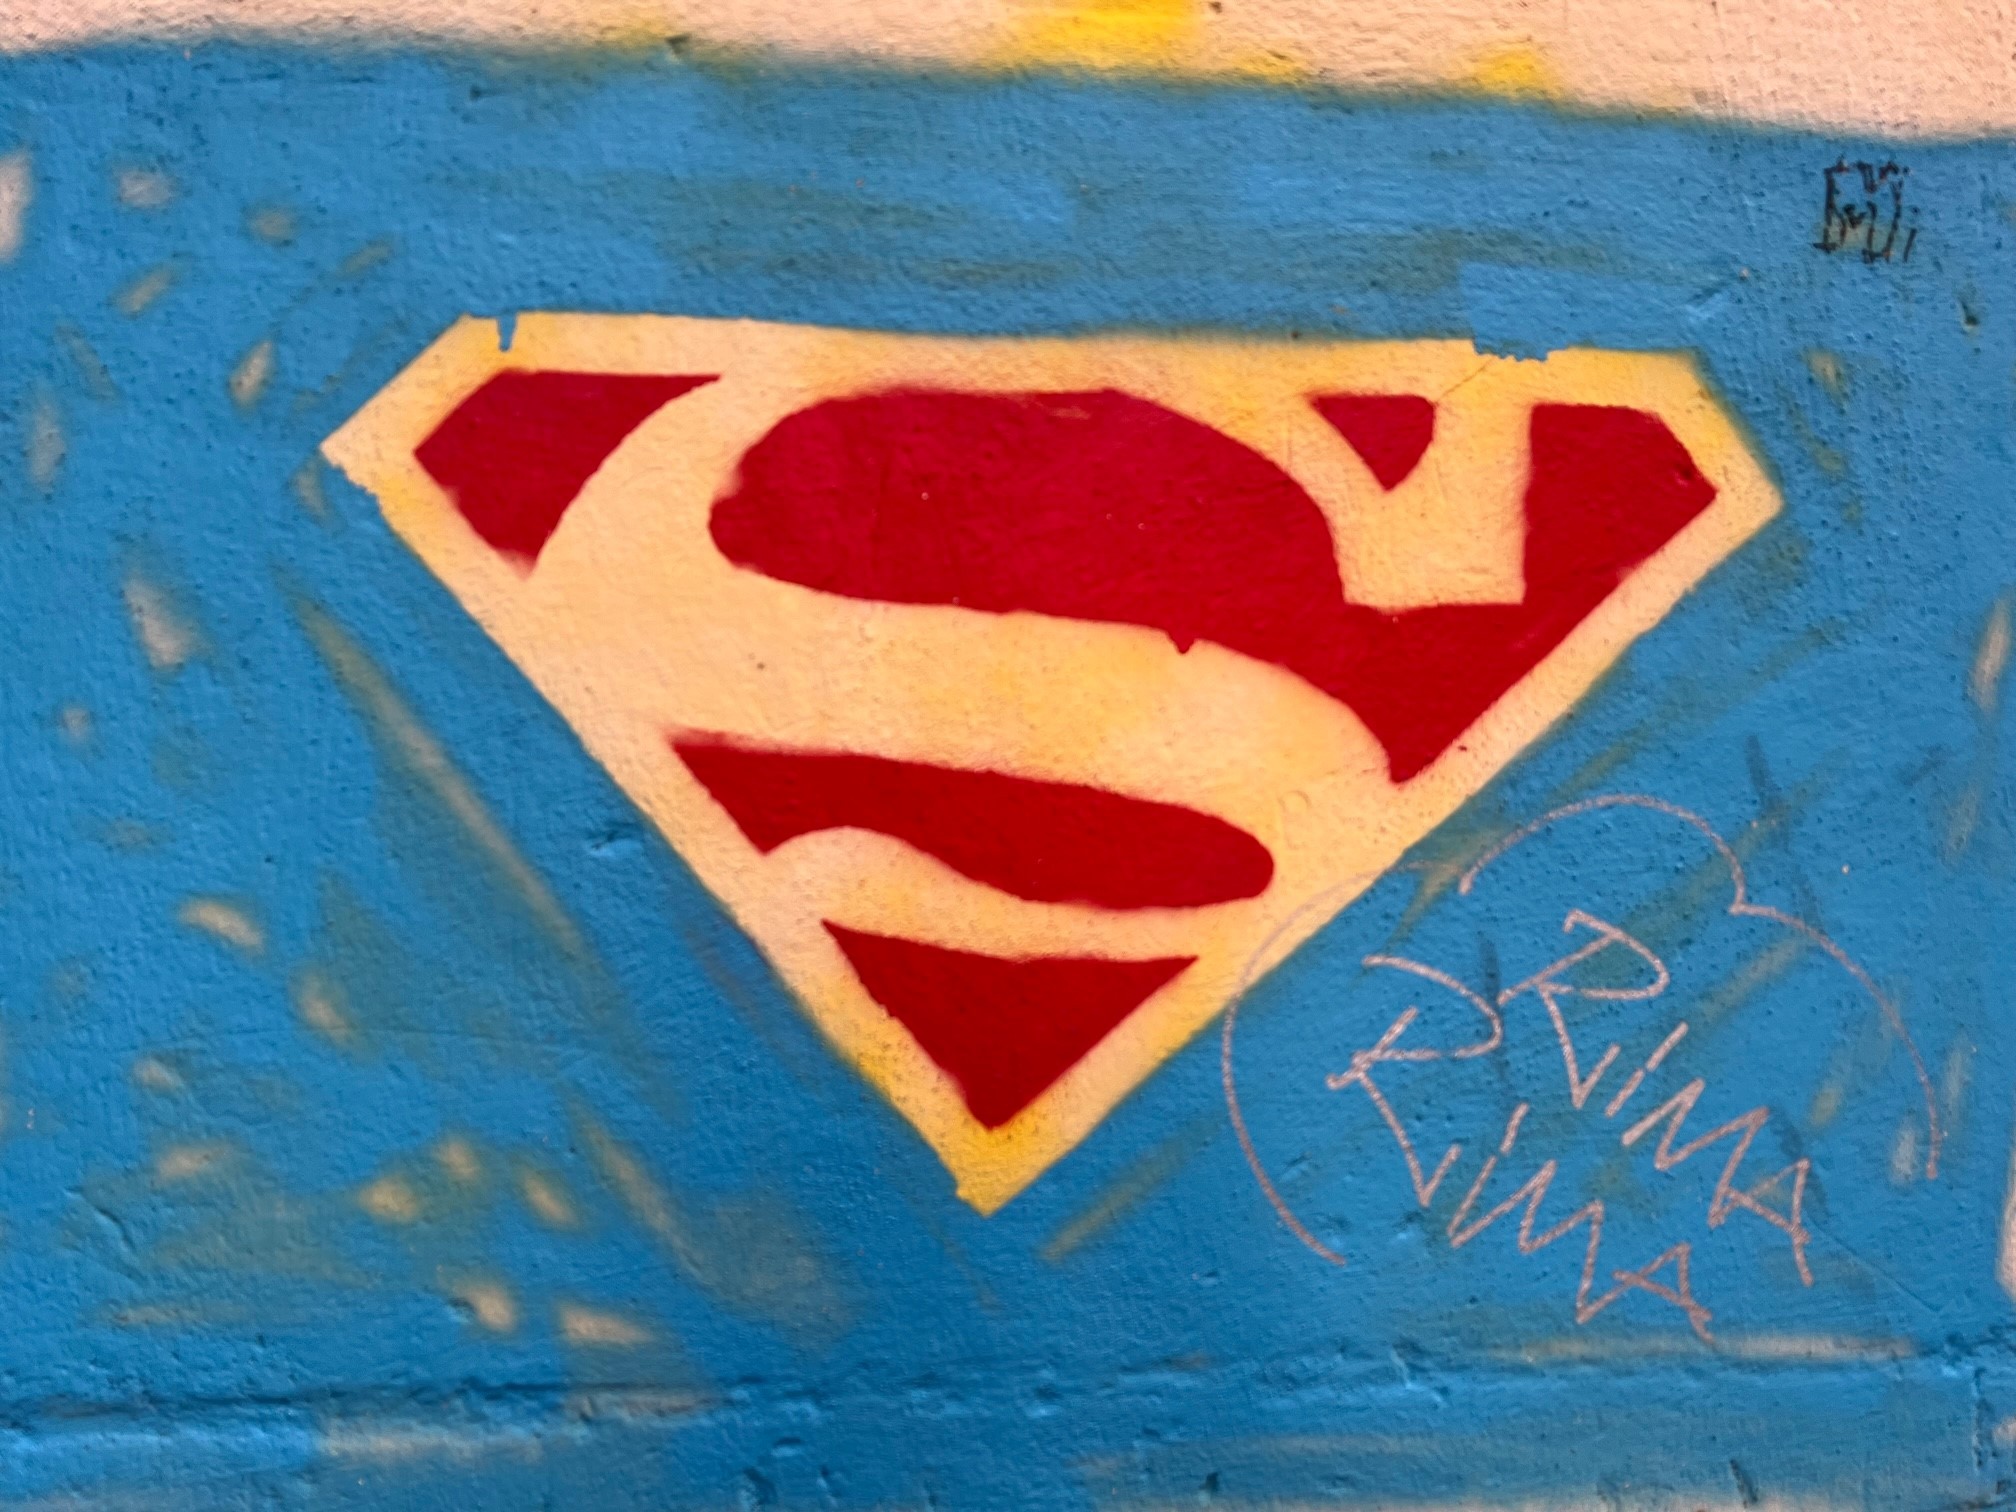 Symbol von Superman als Symbolbild für Empowerment.